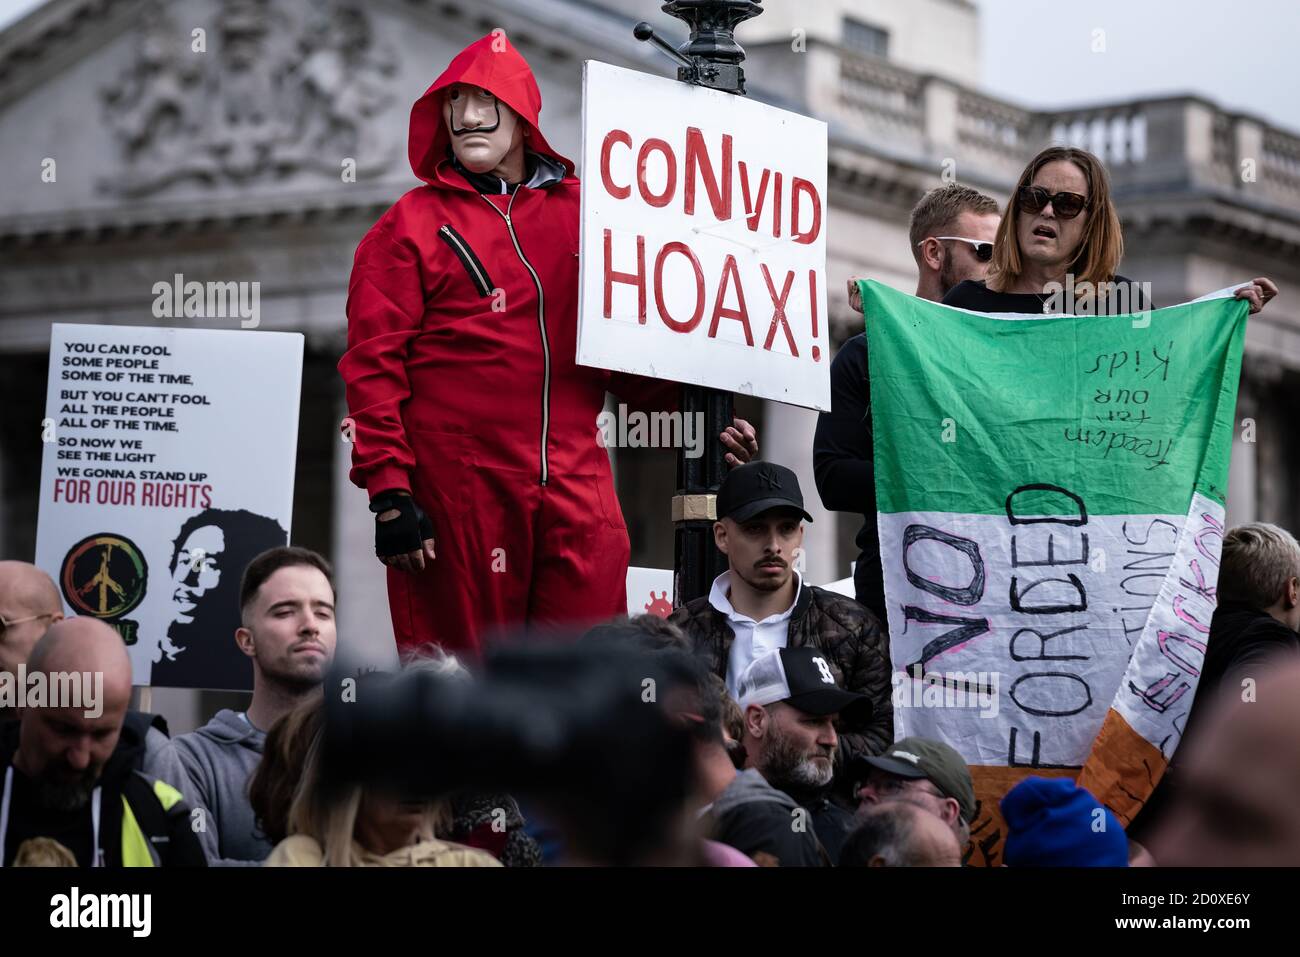 Miles de manifestantes desenmascarados ignoran el distanciamiento social por la protesta y manifestación contra el cierre de la cárcel por "no consentimos" en Trafalgar Square, Londres, Reino Unido. Foto de stock